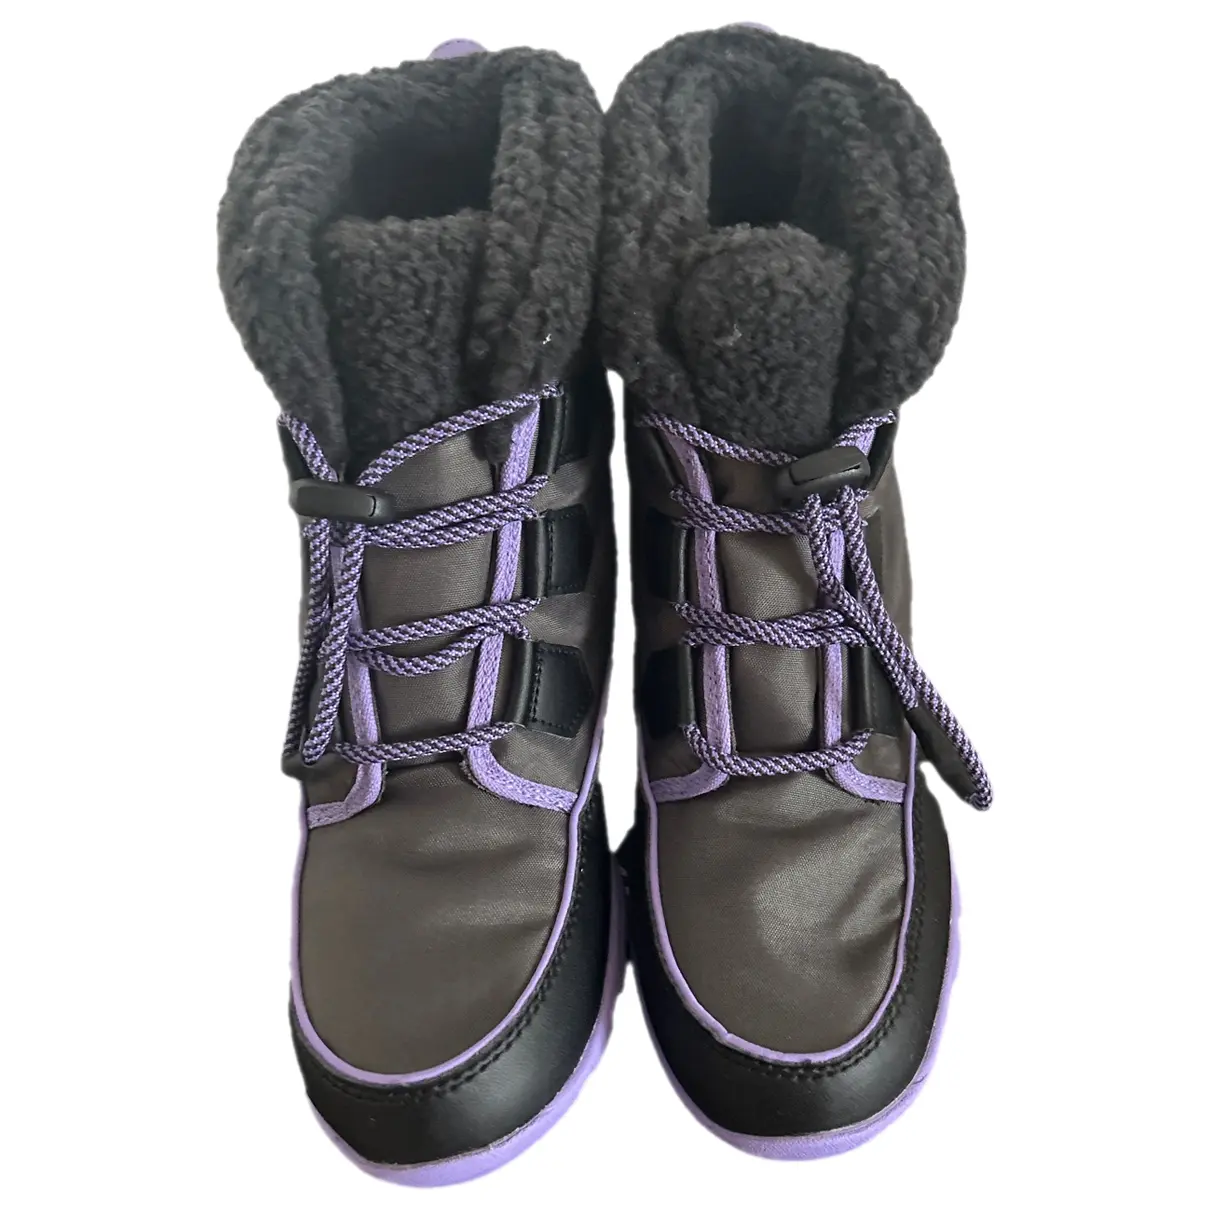 Faux fur snow boots